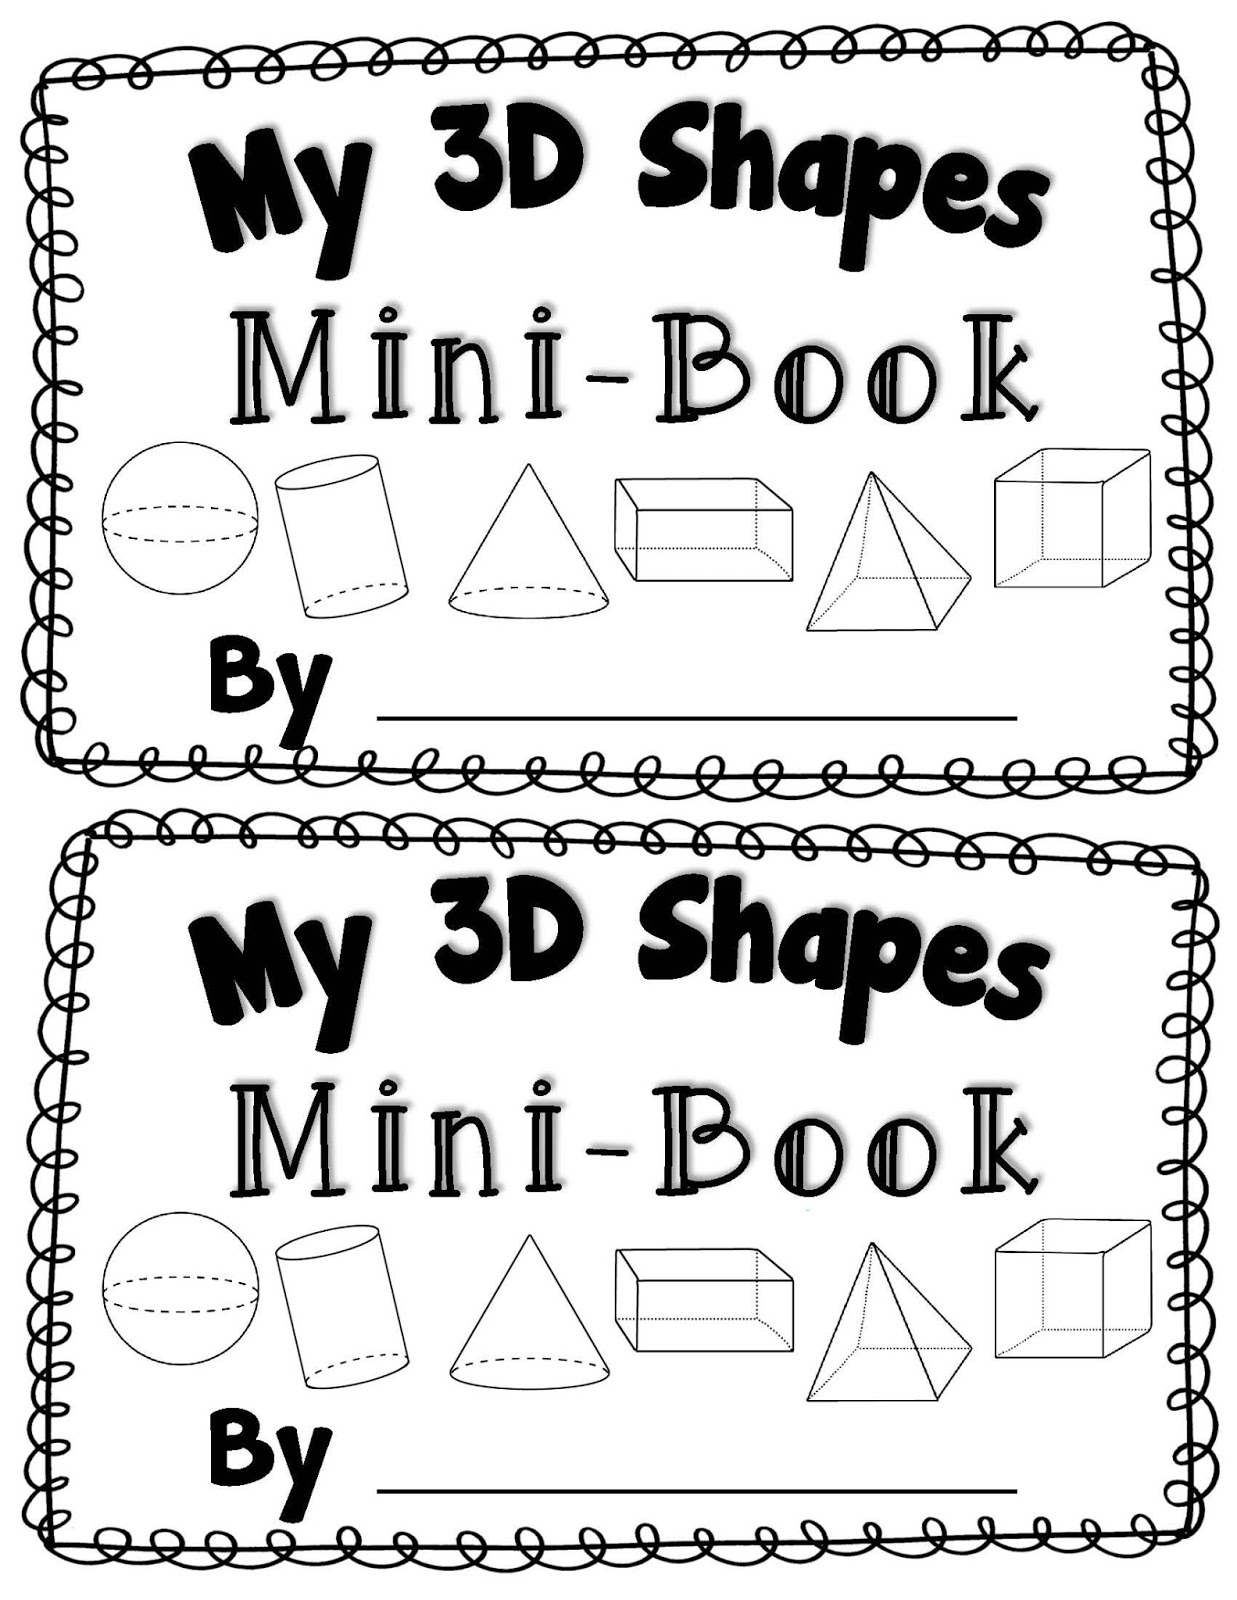 Printable 3D Shapes Kindergarten Image